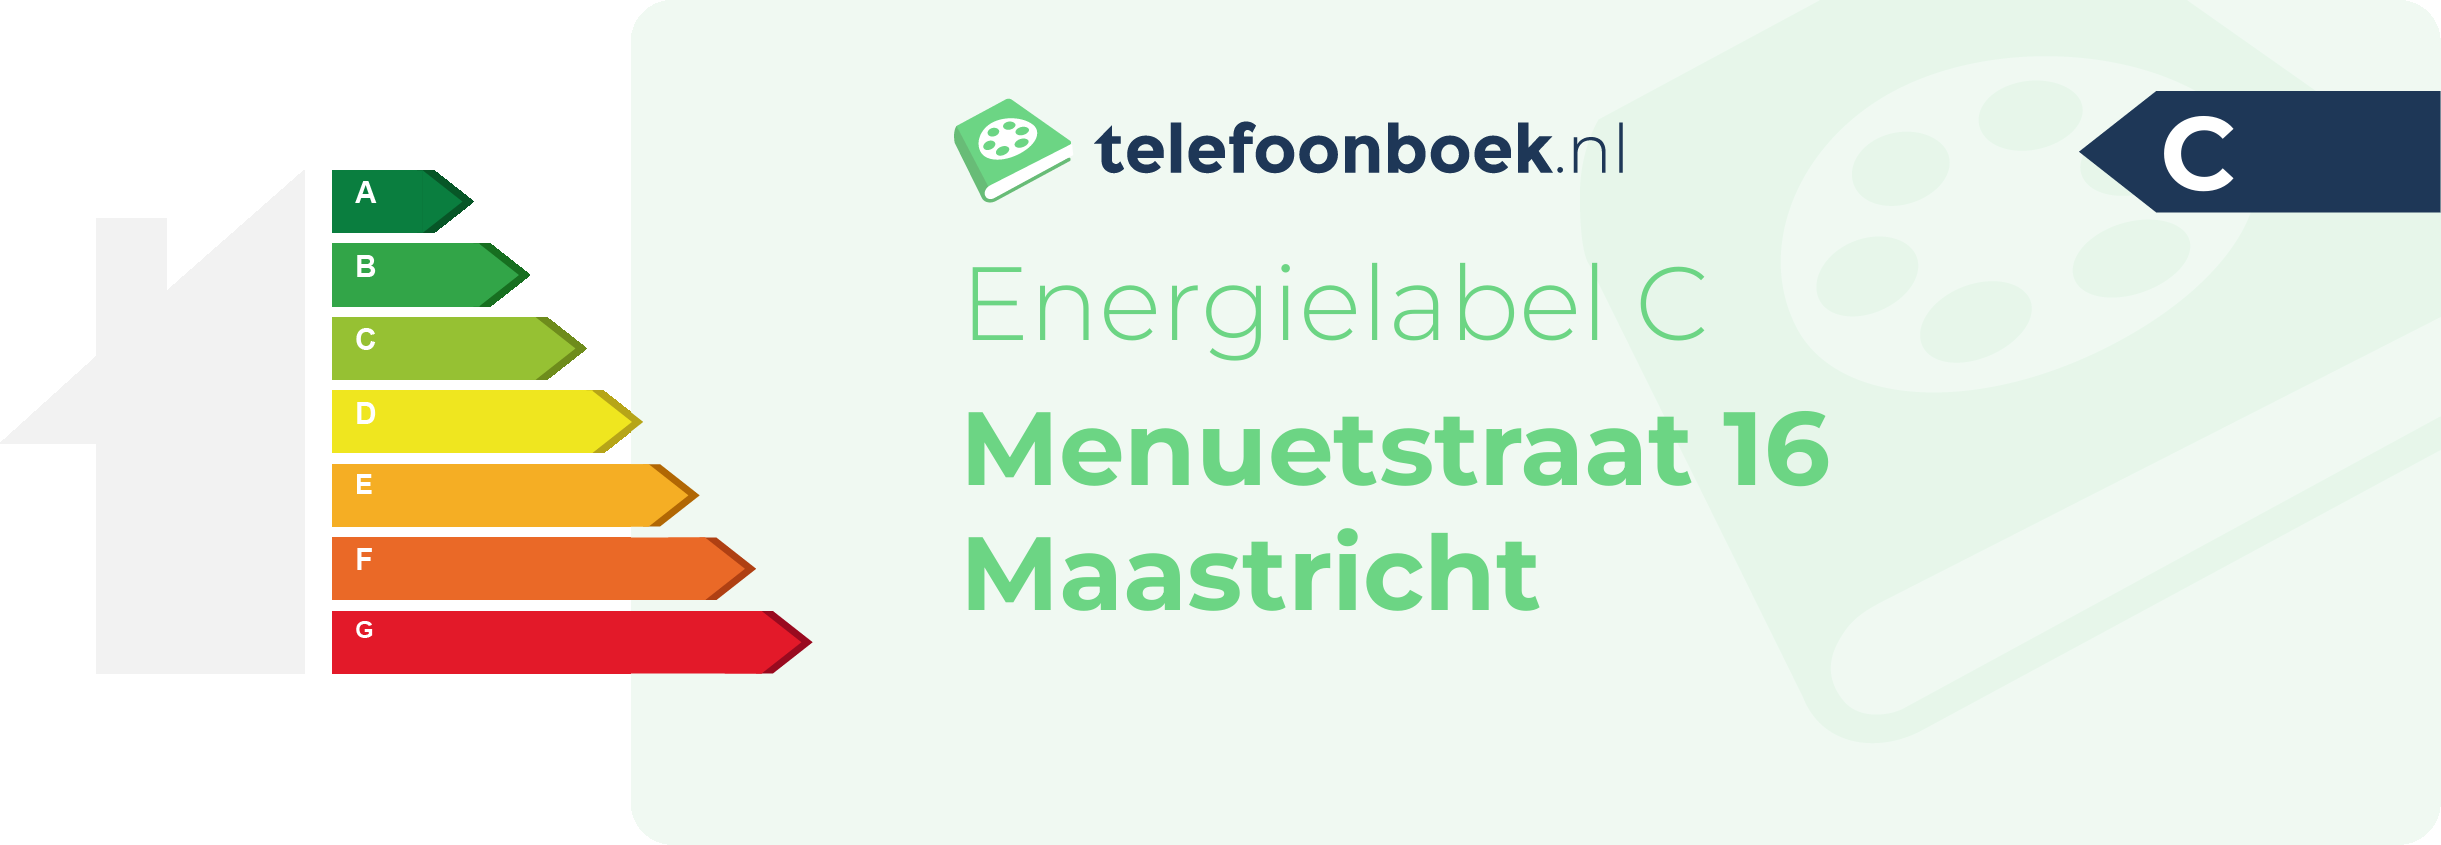 Energielabel Menuetstraat 16 Maastricht